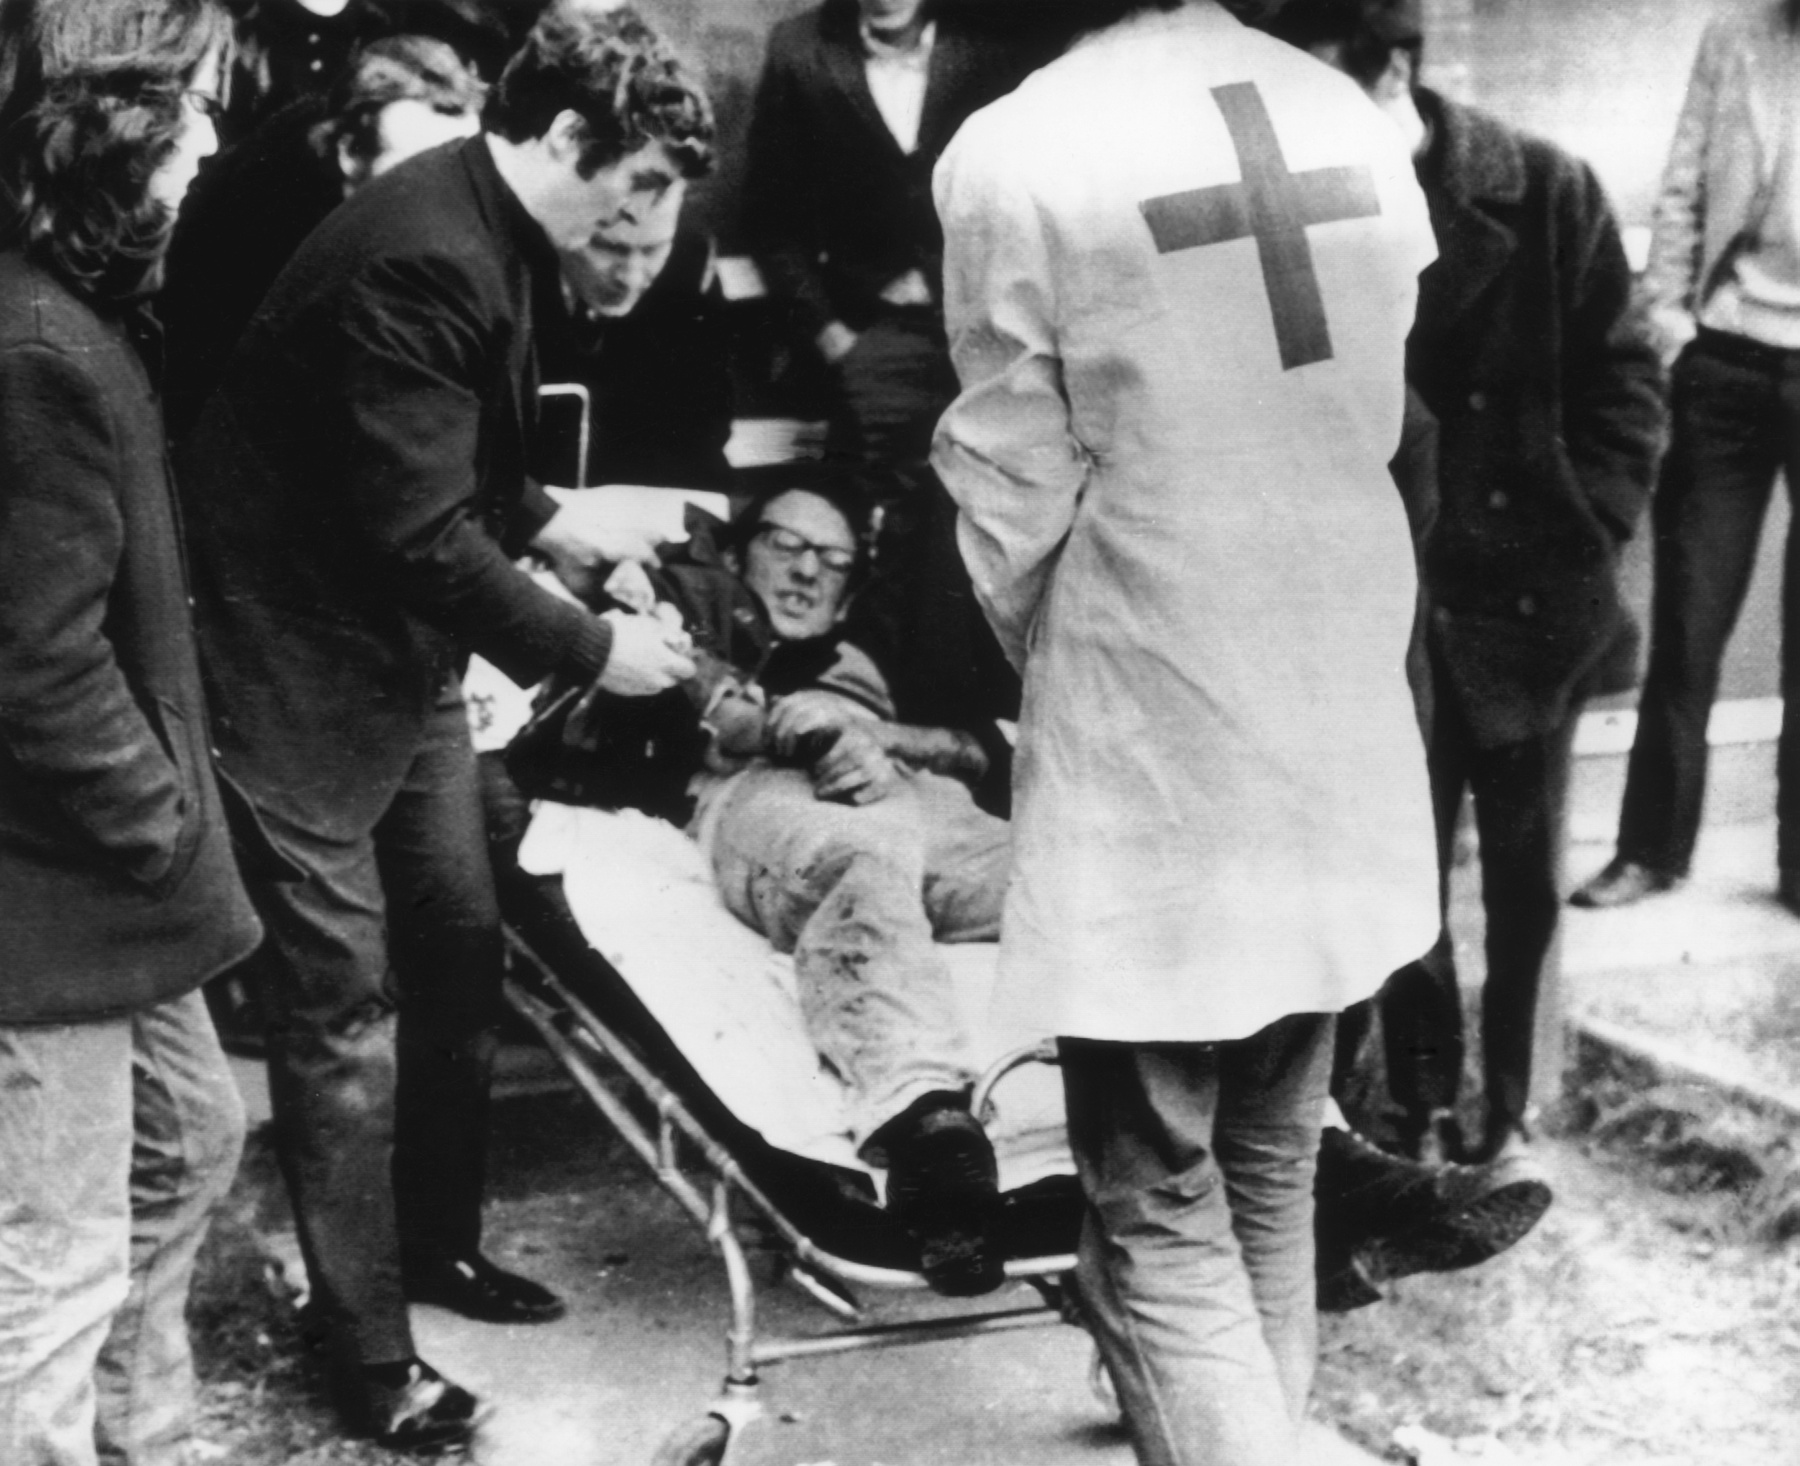 A mészárlás emblematikus fotójának festményváltozata. a 17 éves, haldokló Jacky Duddyt cipelő tüntetők előtt egy pap, Edward Daly halad fehér zsebkendőt lobogtatva.